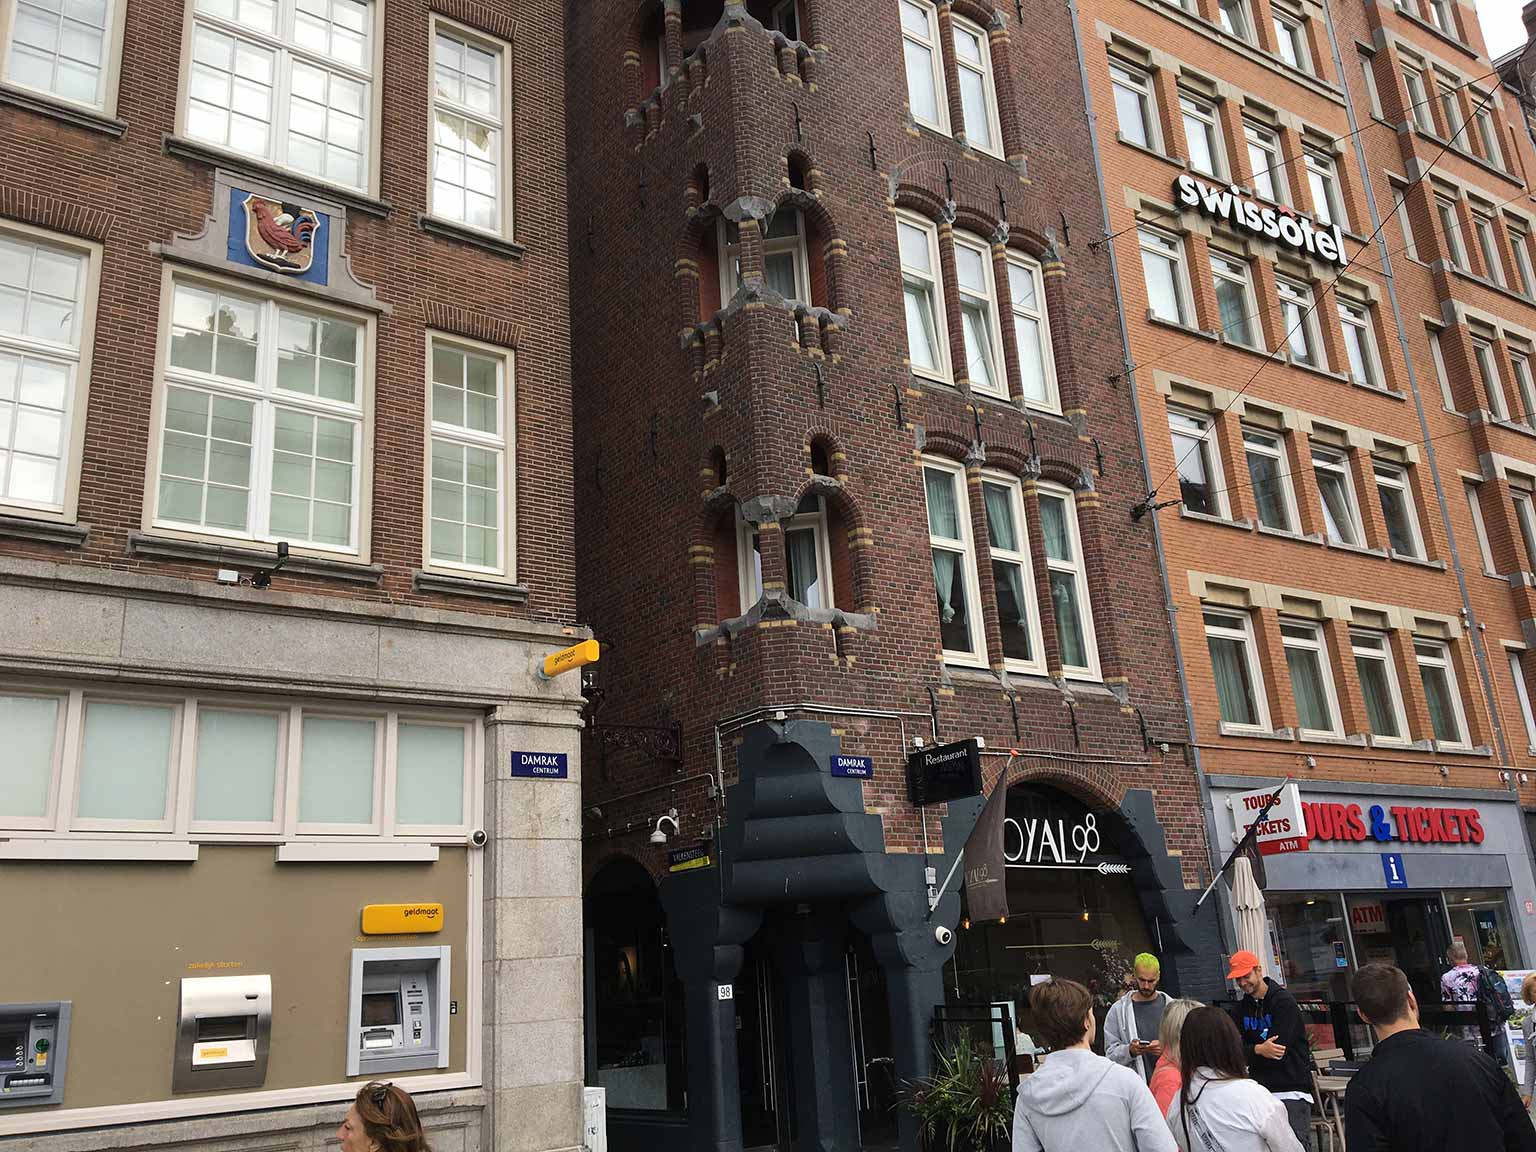 Gevelsteen met hand en haan op Damrak 100, Amsterdam, de Valkensteeg rechts ervan